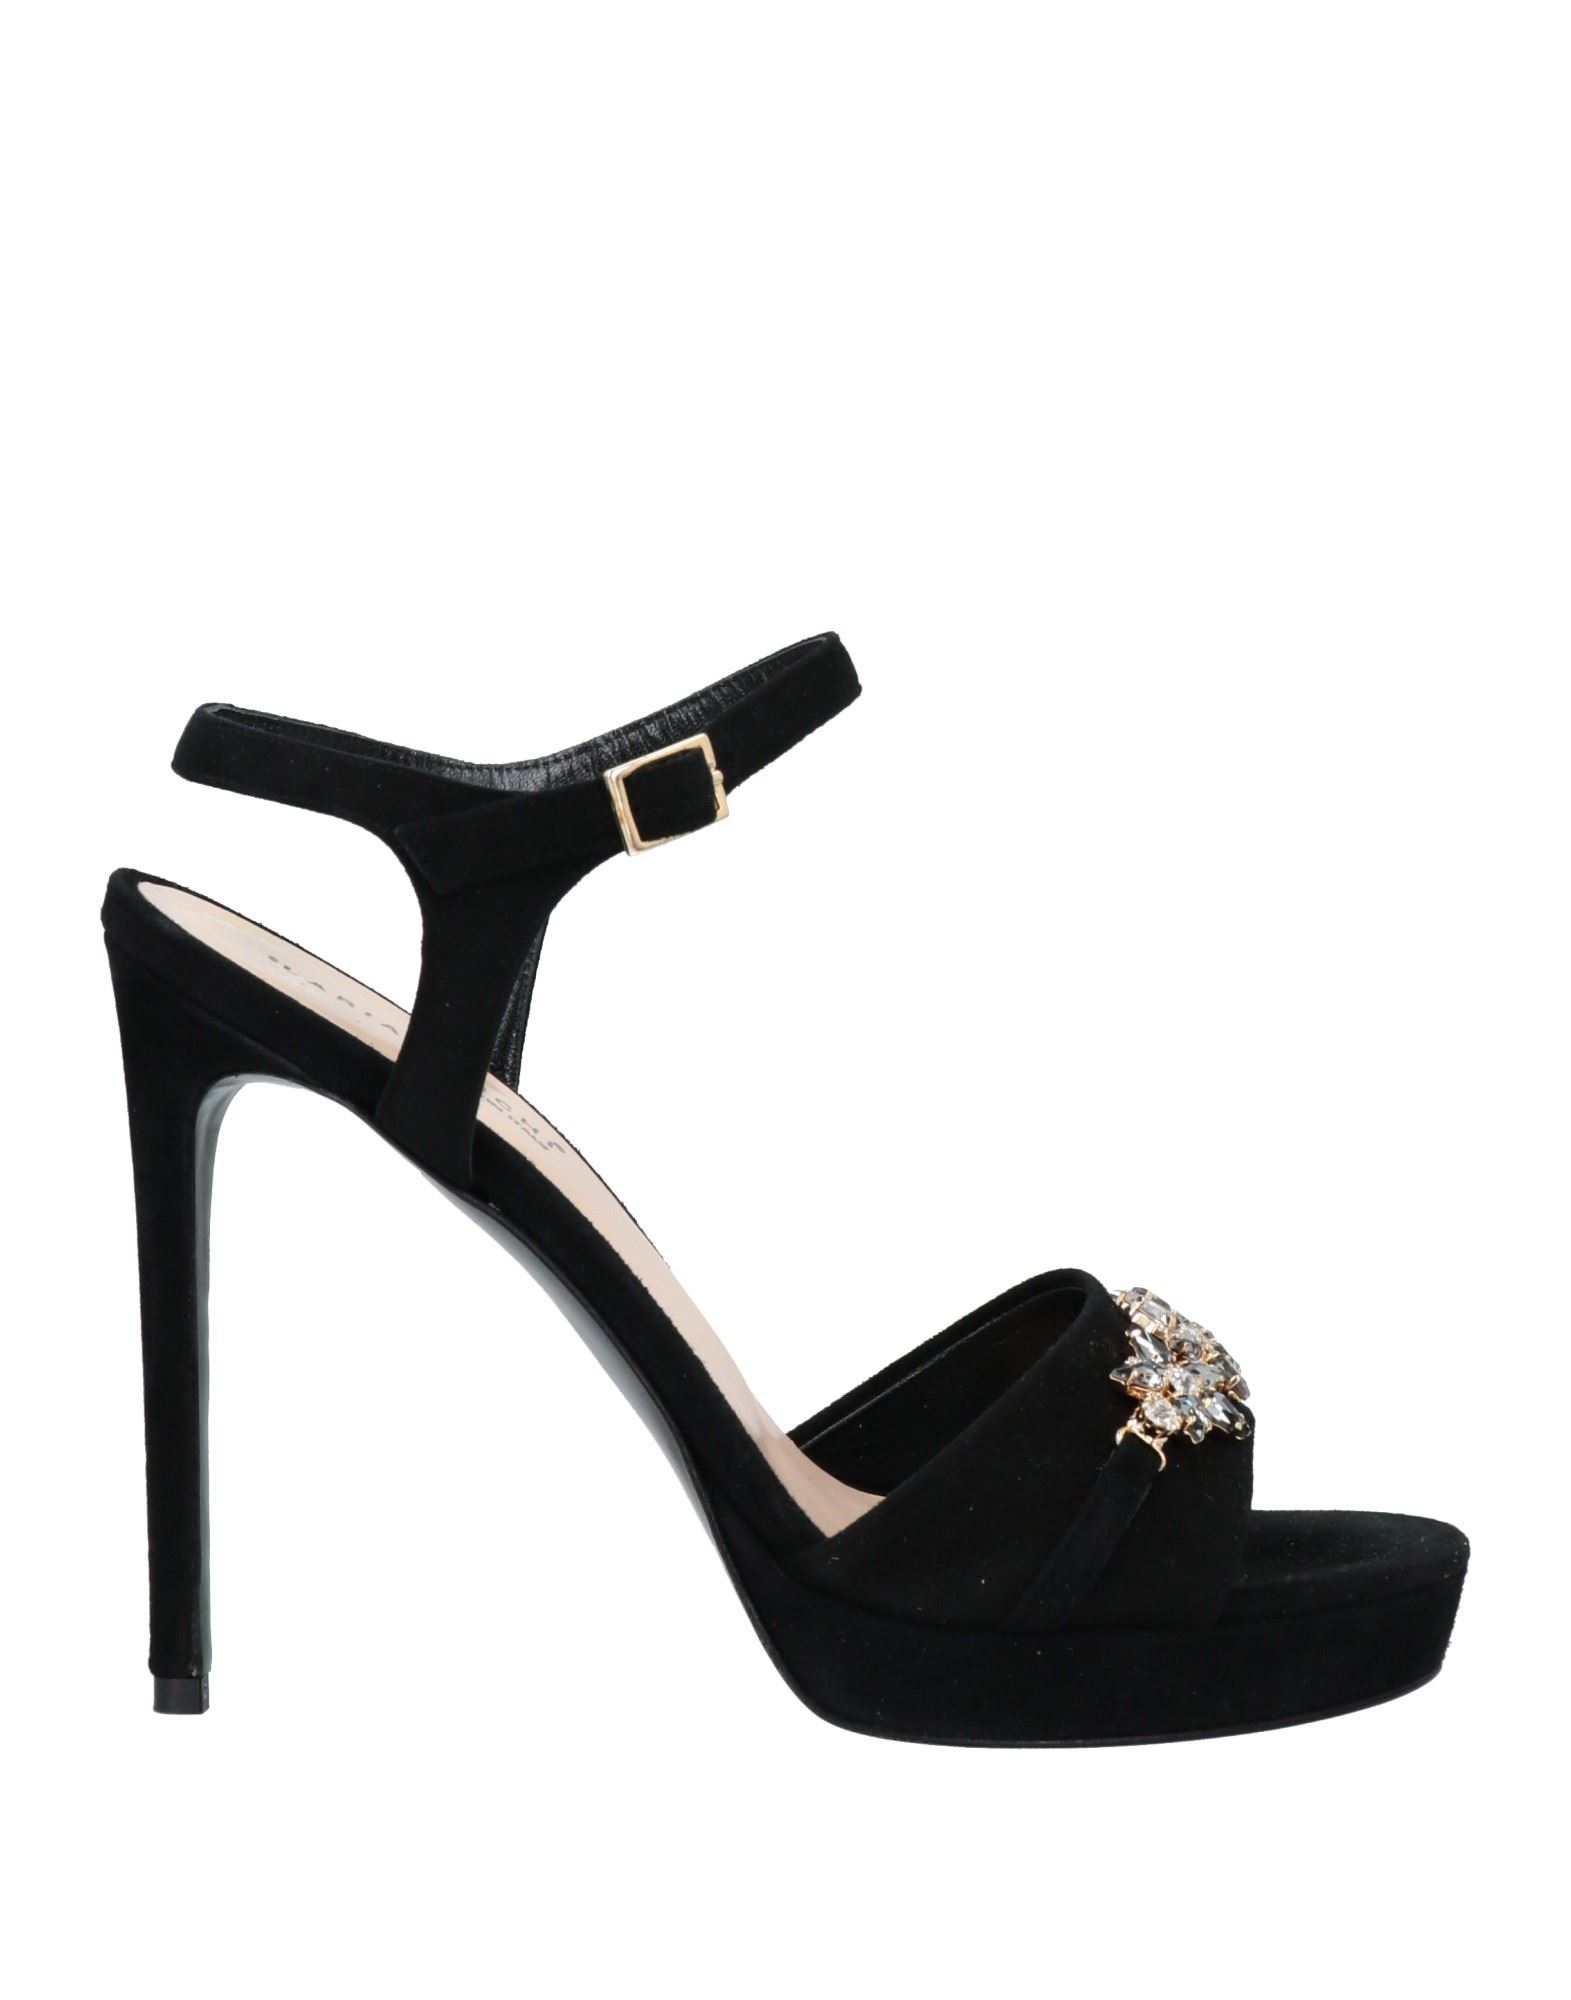 Ilaria Toschi Sandals In Black